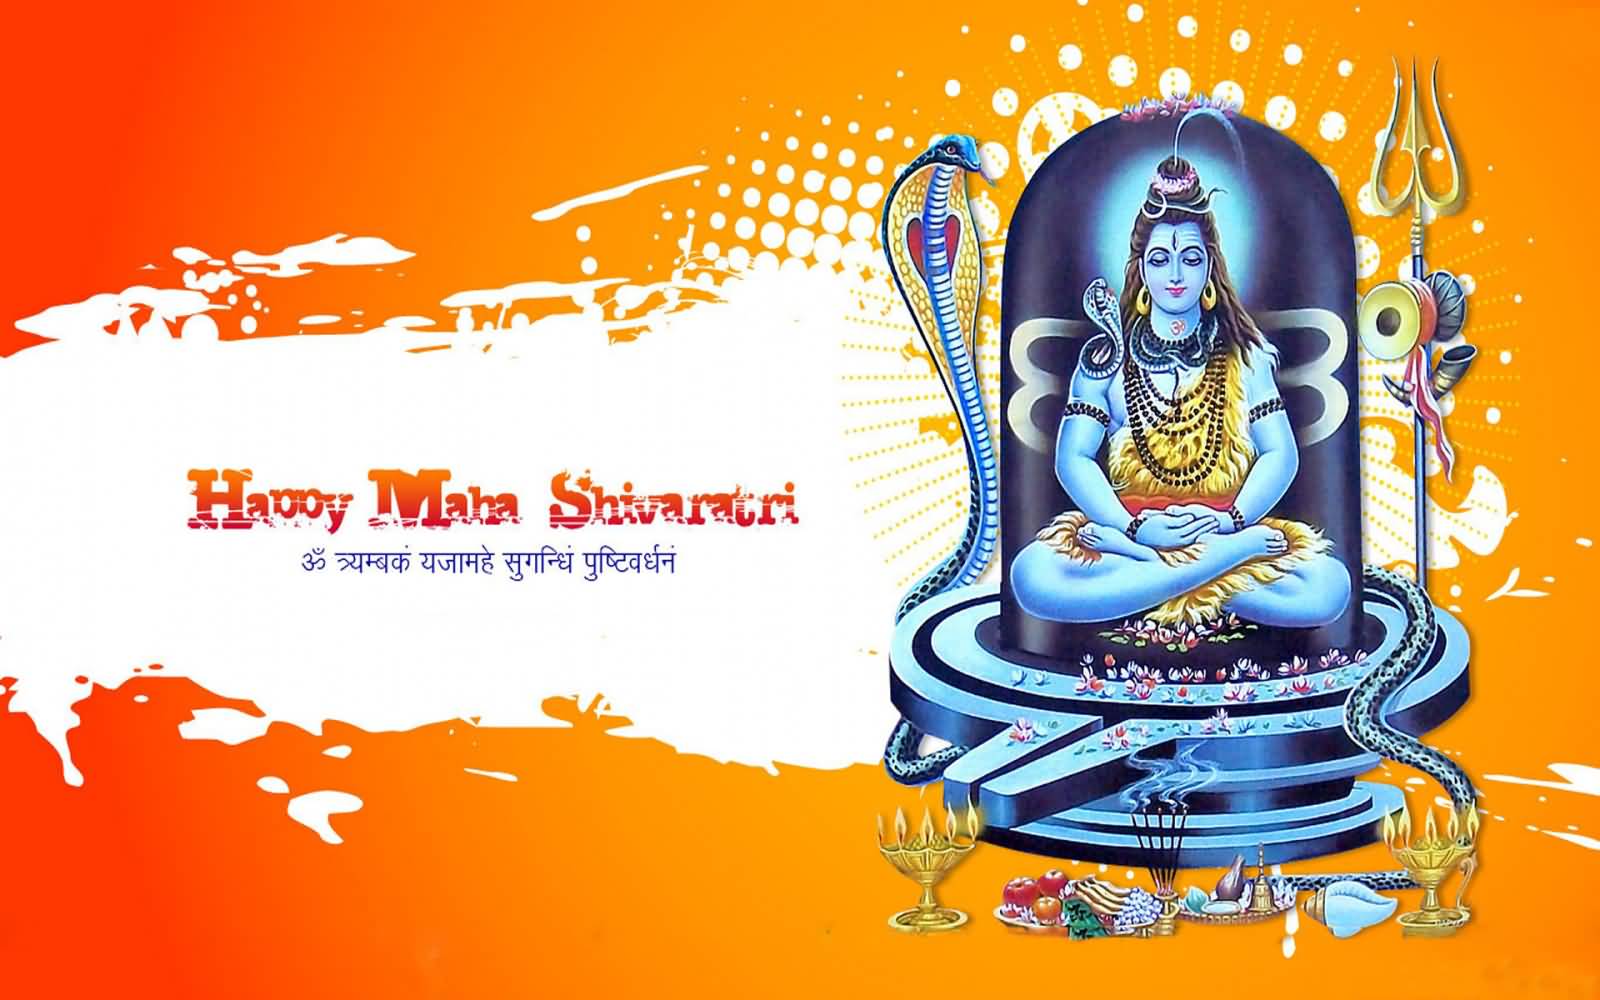 Happy Maha Shivratri 2017 Hd Wallpaper - Maha Shivratri Banner Hd - HD Wallpaper 